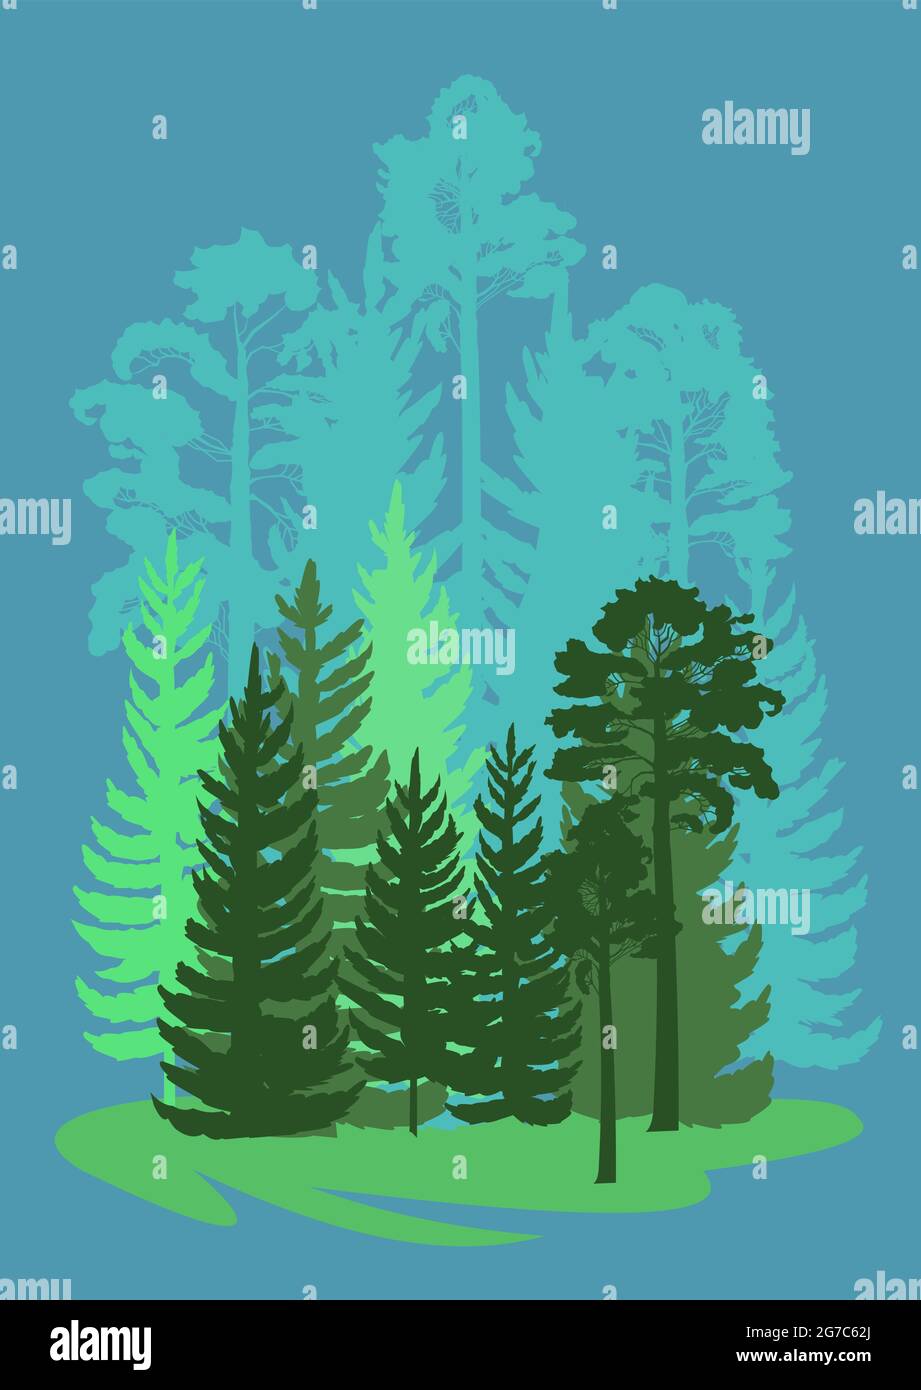 Forest Silhouette. Landschaft mit Nadelbäumen. Wunderschöne Aussicht. Kiefern- und Fichtenbäume. Sommer Naturlandschaft. Illustrationsvektor. Stock Vektor